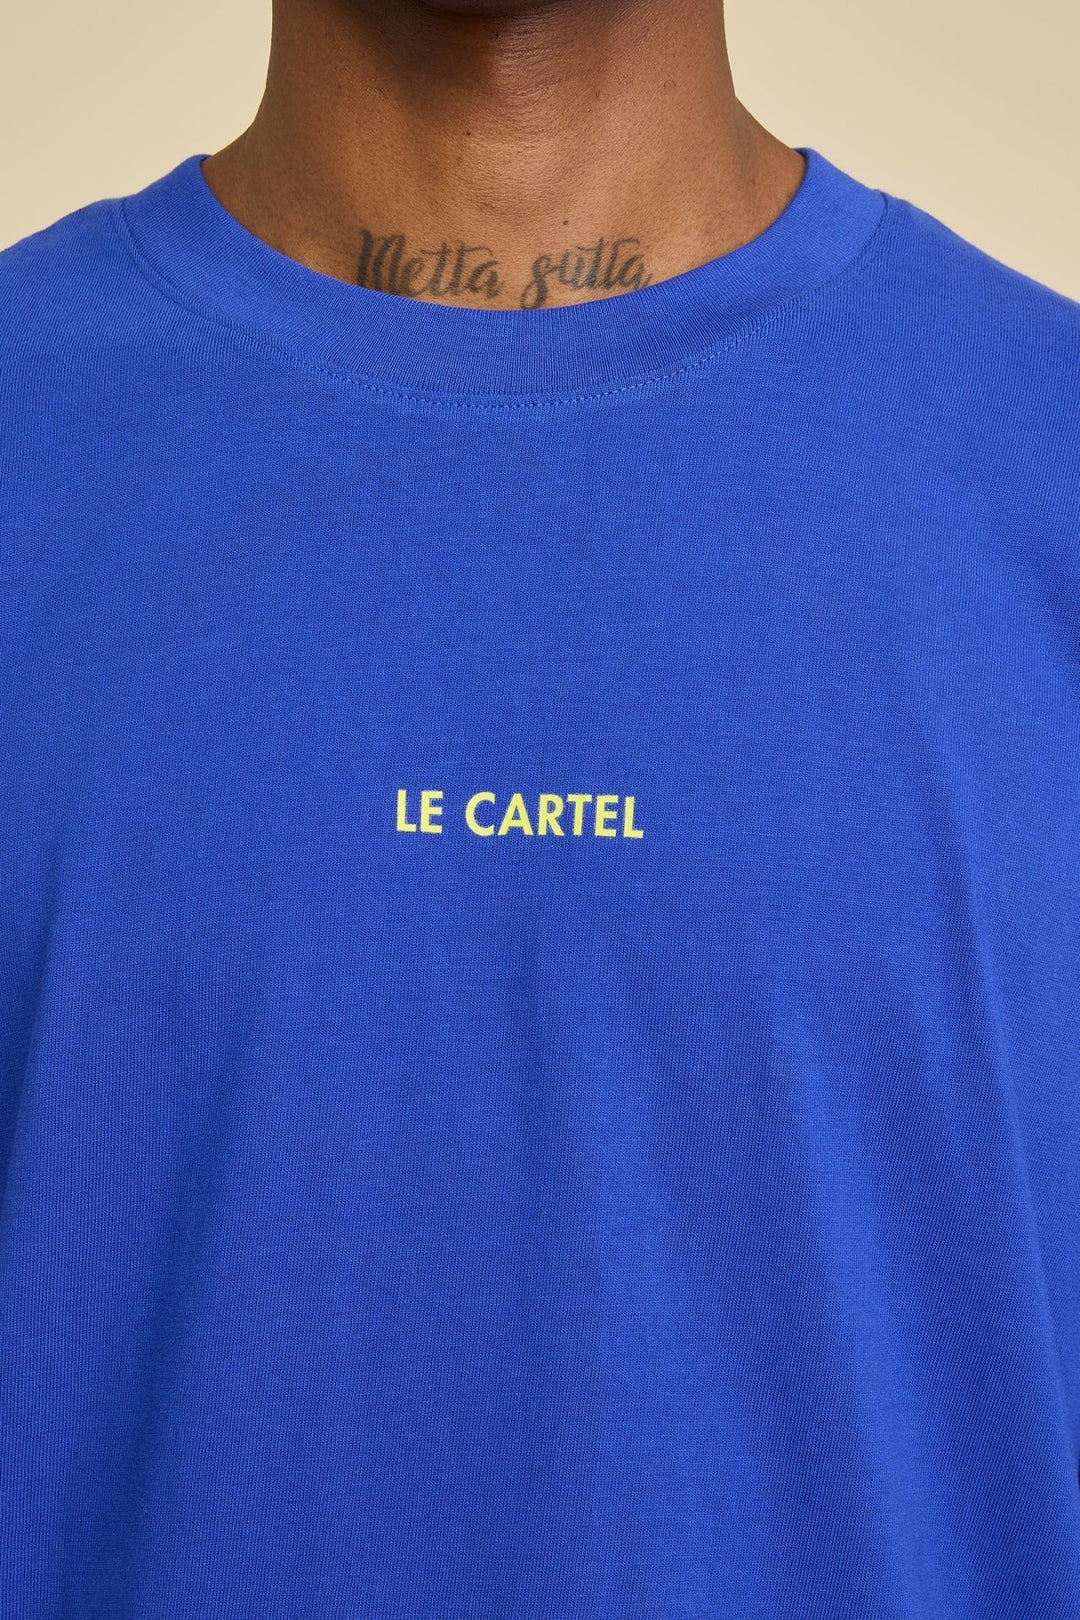 TRANS - CHATLANTIQUE・T - shirt unisexe・Bleu - Le Cartel